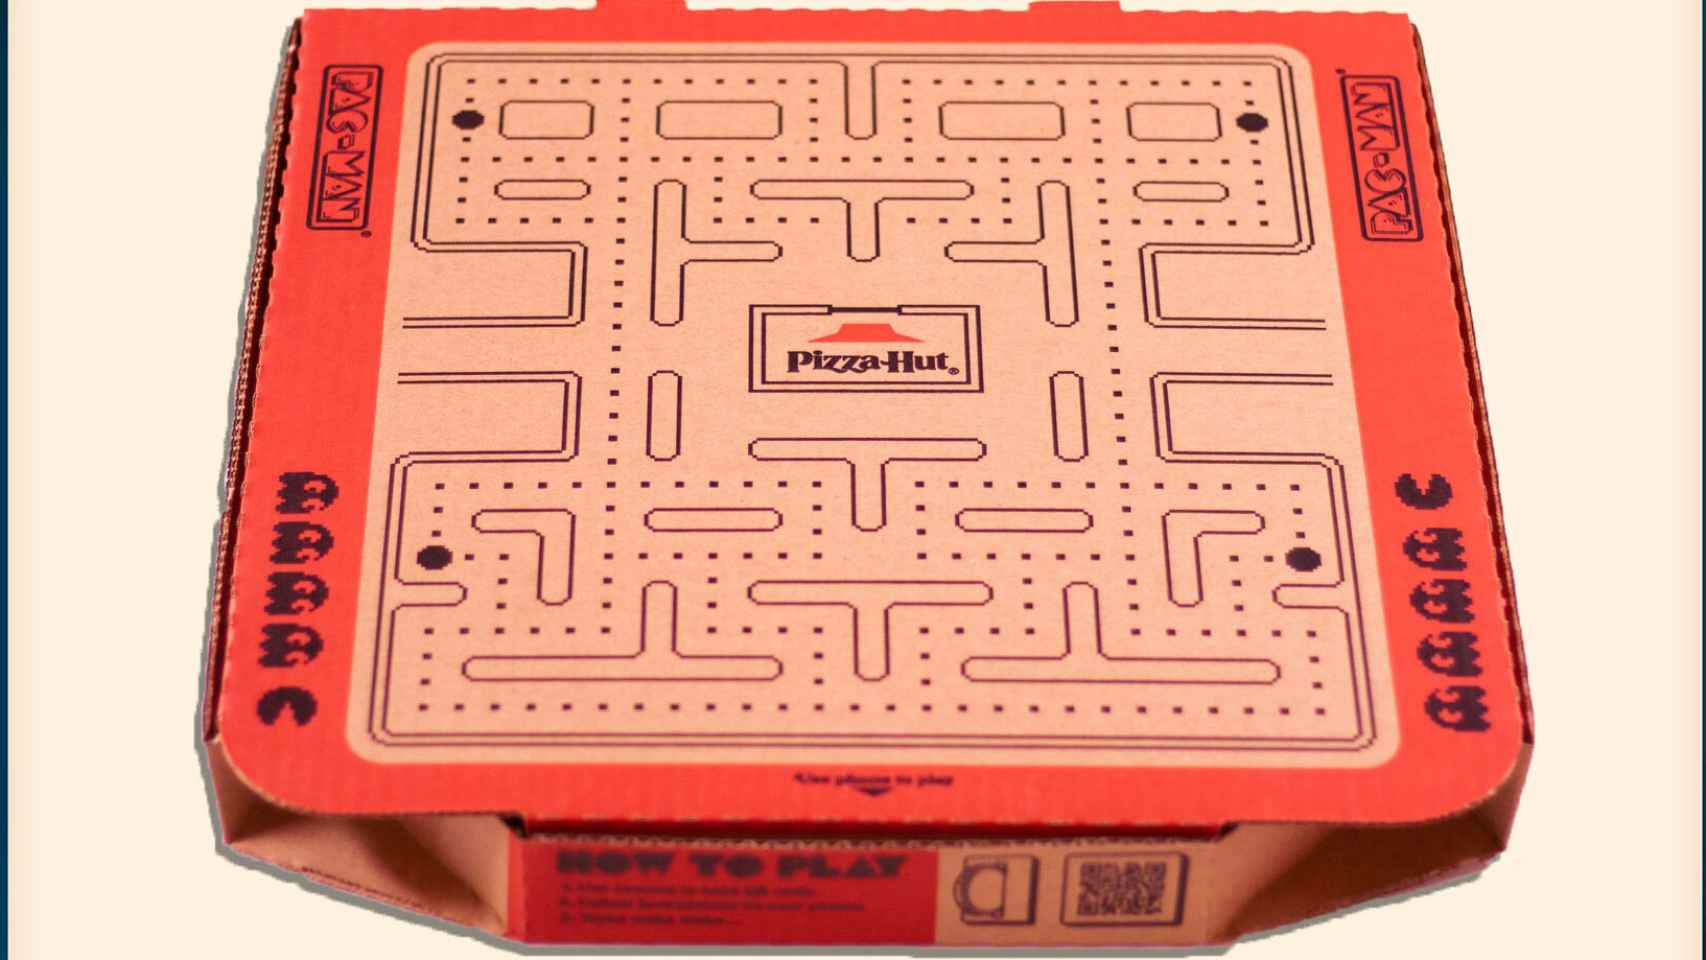 Tablero del Pac-Man en la caja